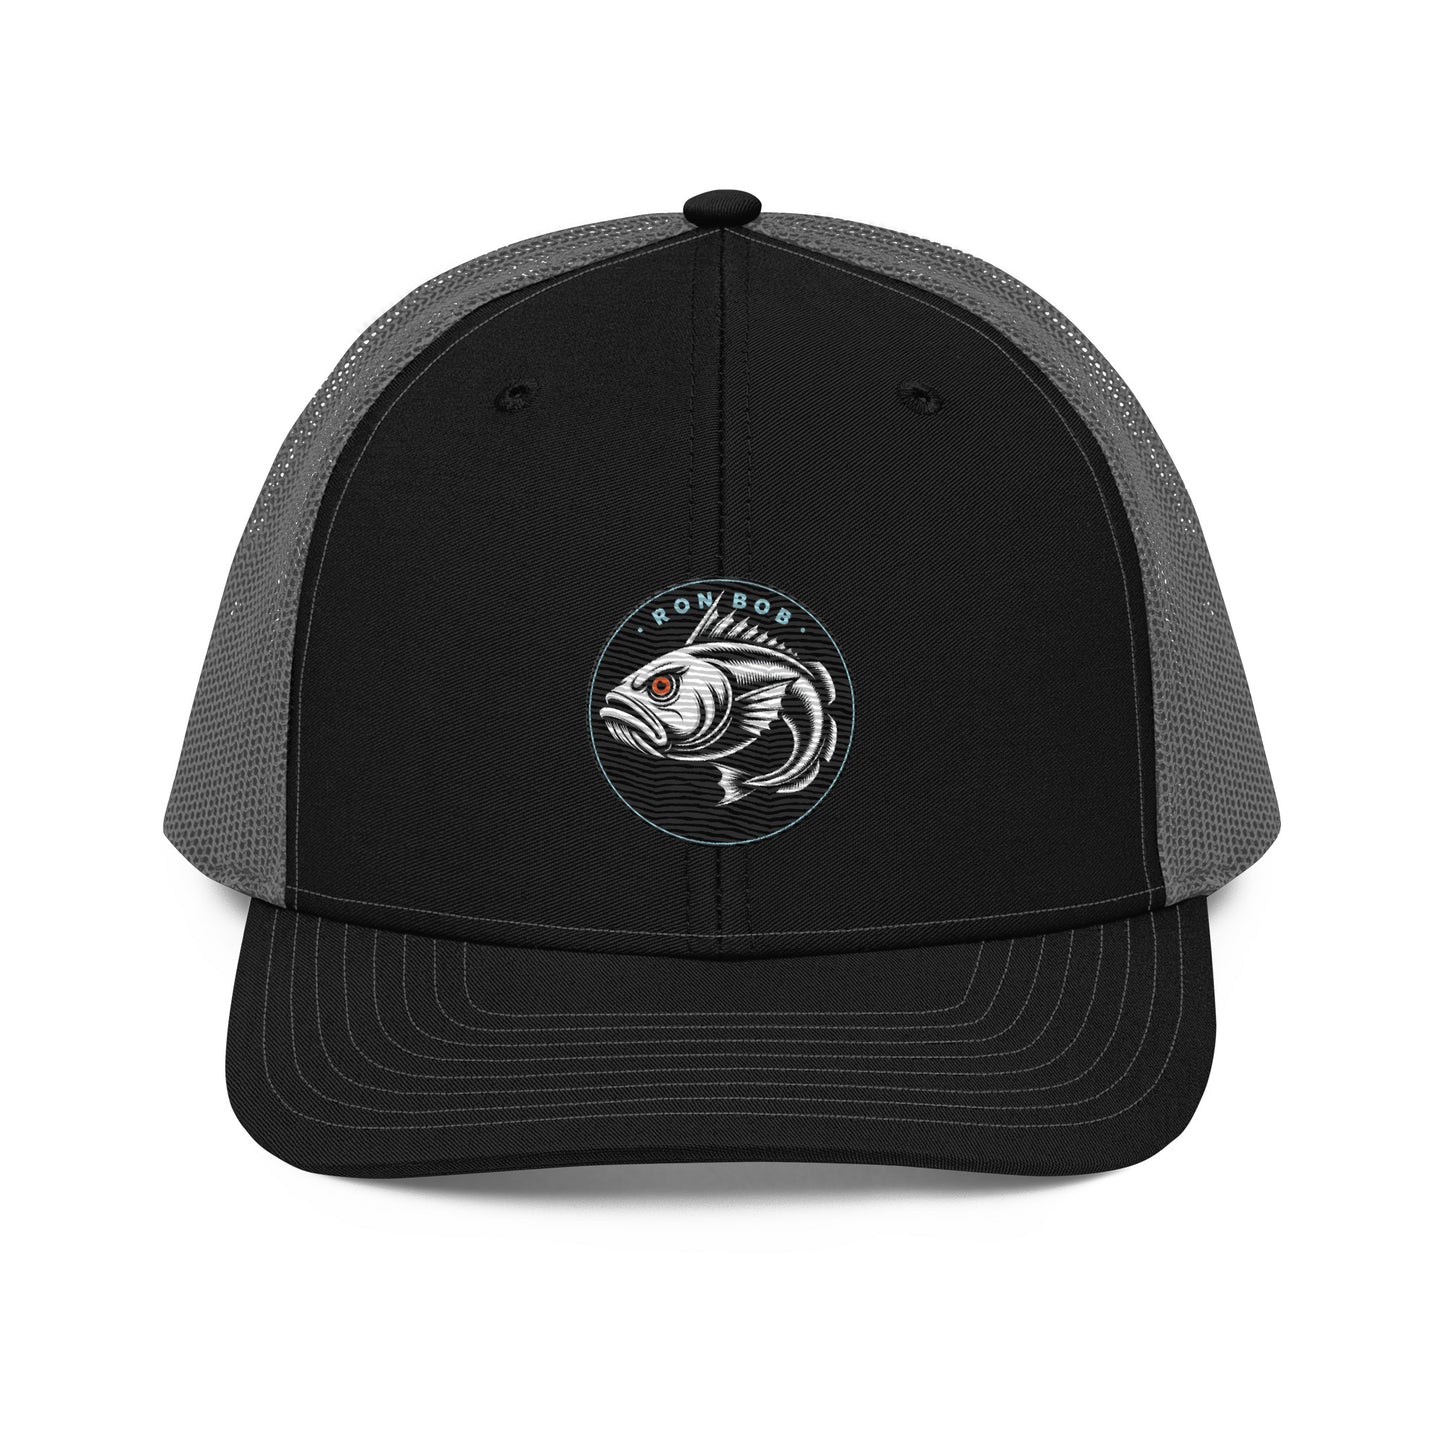 Lingcod Fishing Hat - Richardson 112